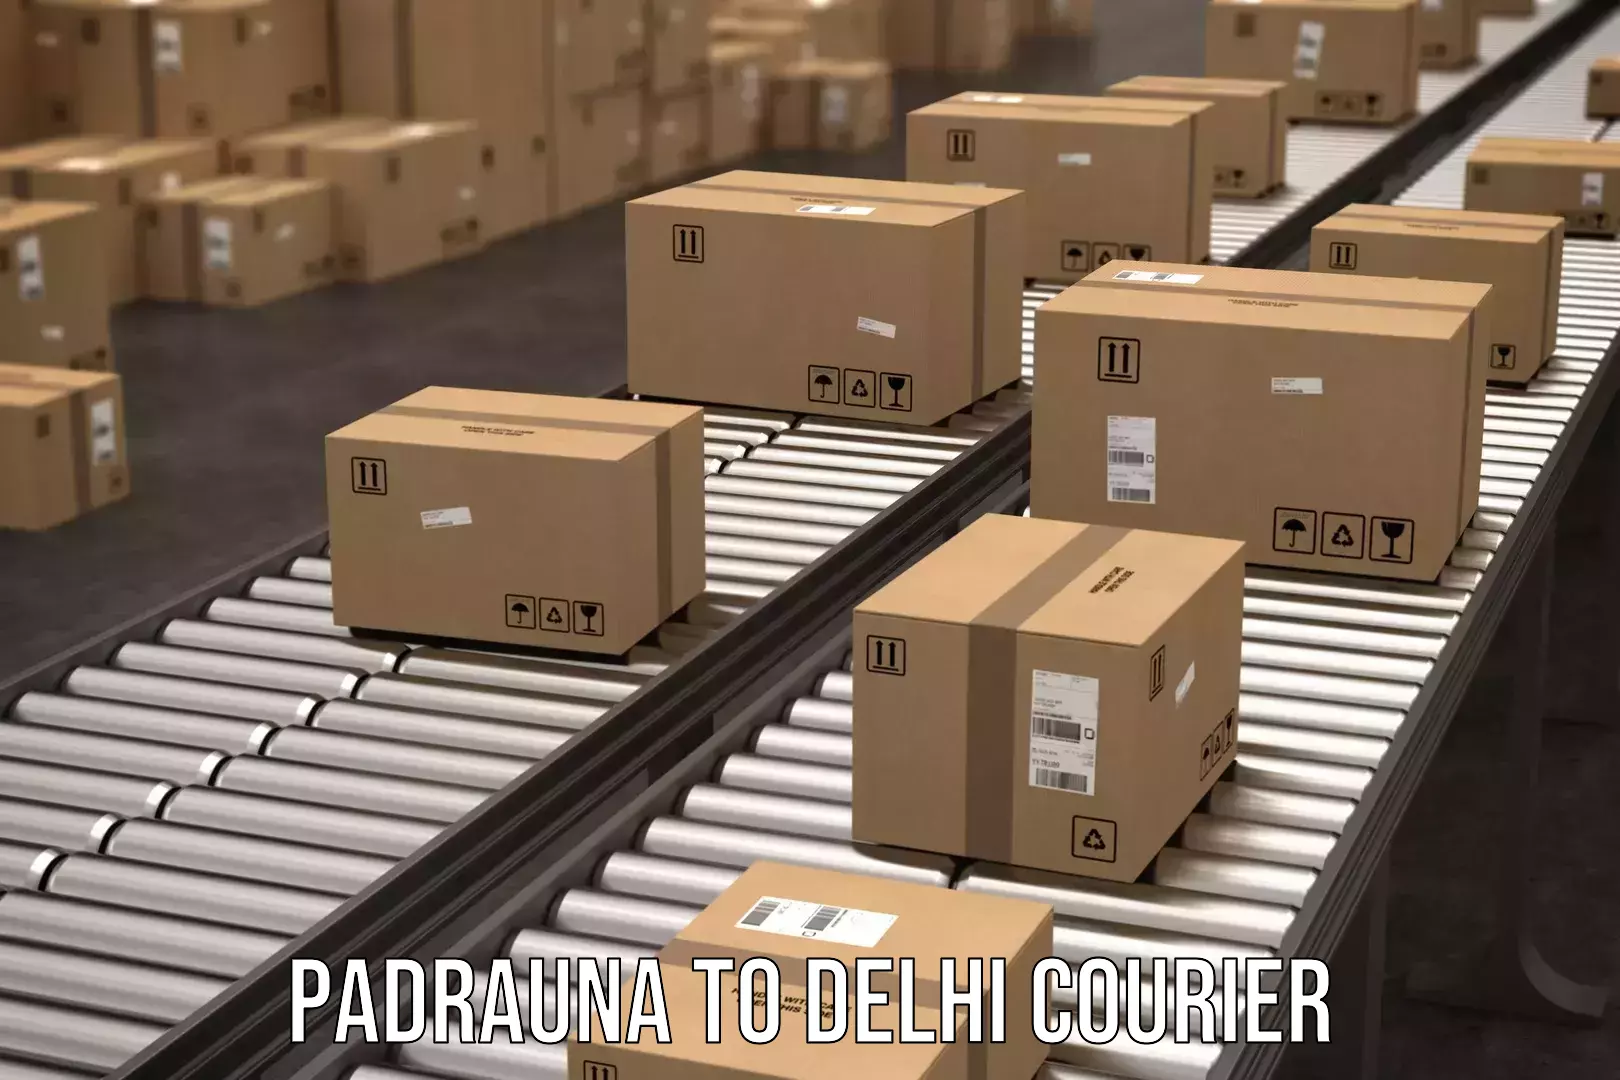 24/7 courier service Padrauna to IIT Delhi